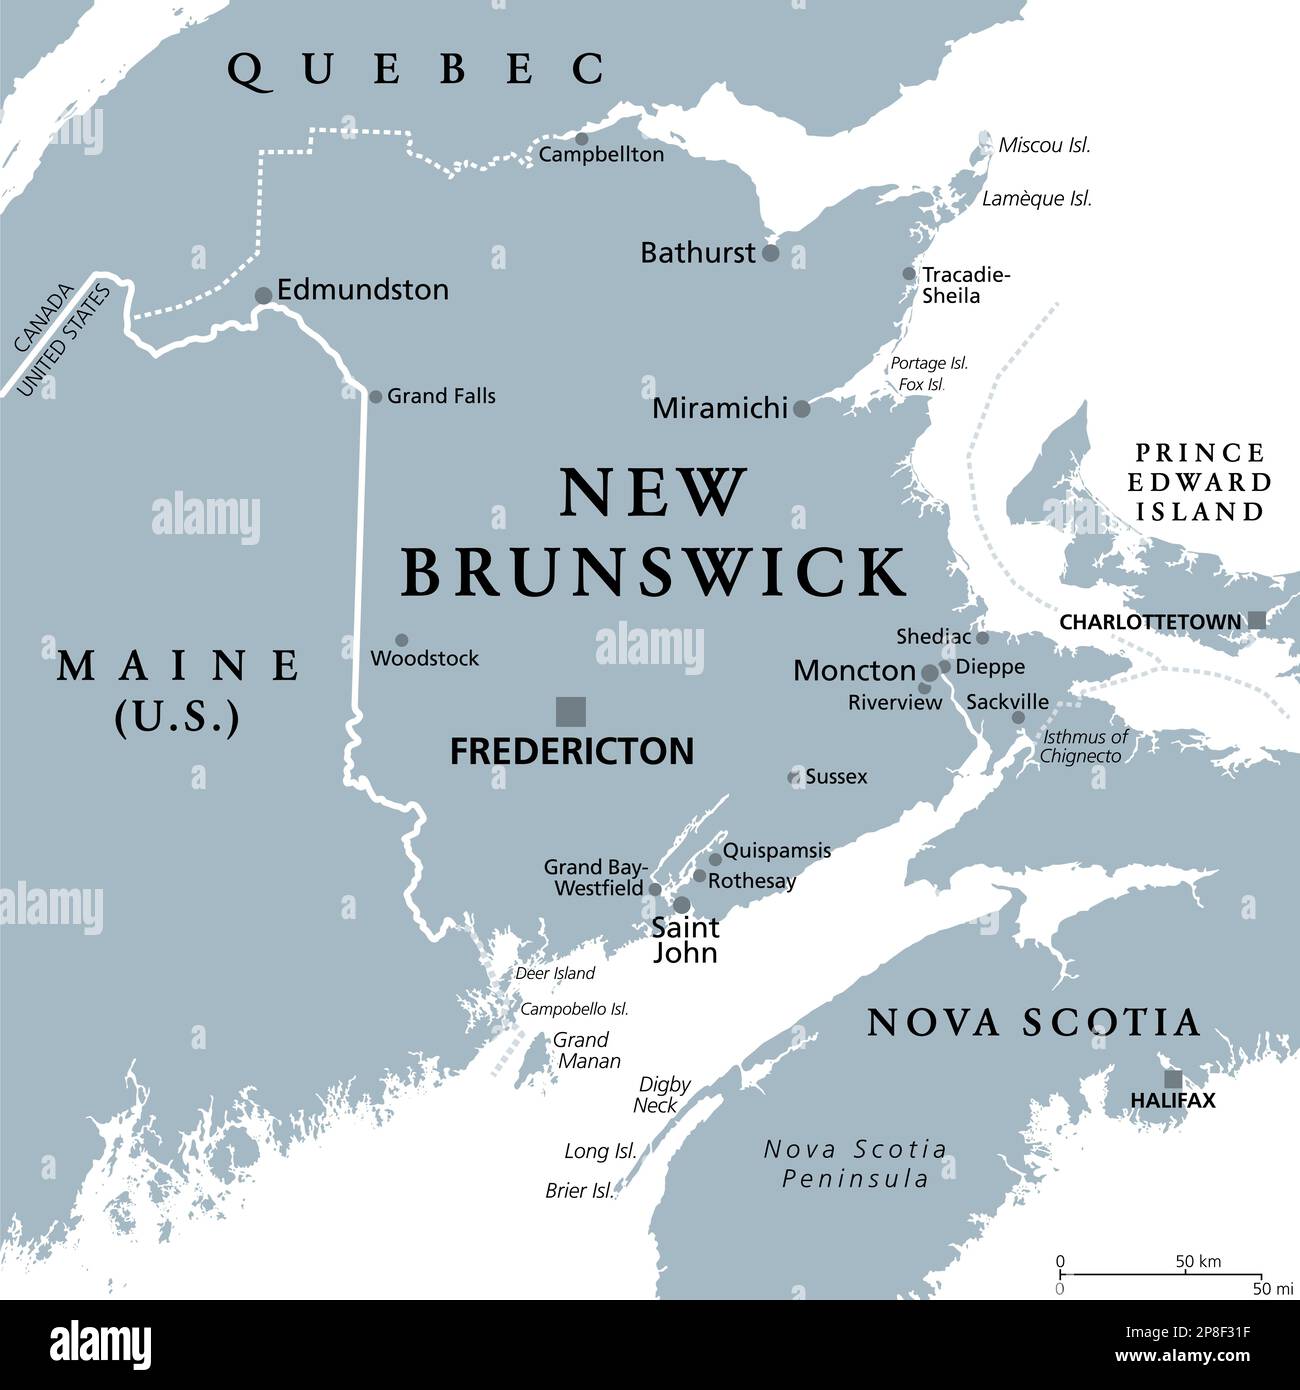 New Brunswick, provincia marittima e atlantica del Canada, mappa politica grigia. Confinante con Quebec, Nova Scotia, Maine e il Golfo di San Lorenzo. Foto Stock